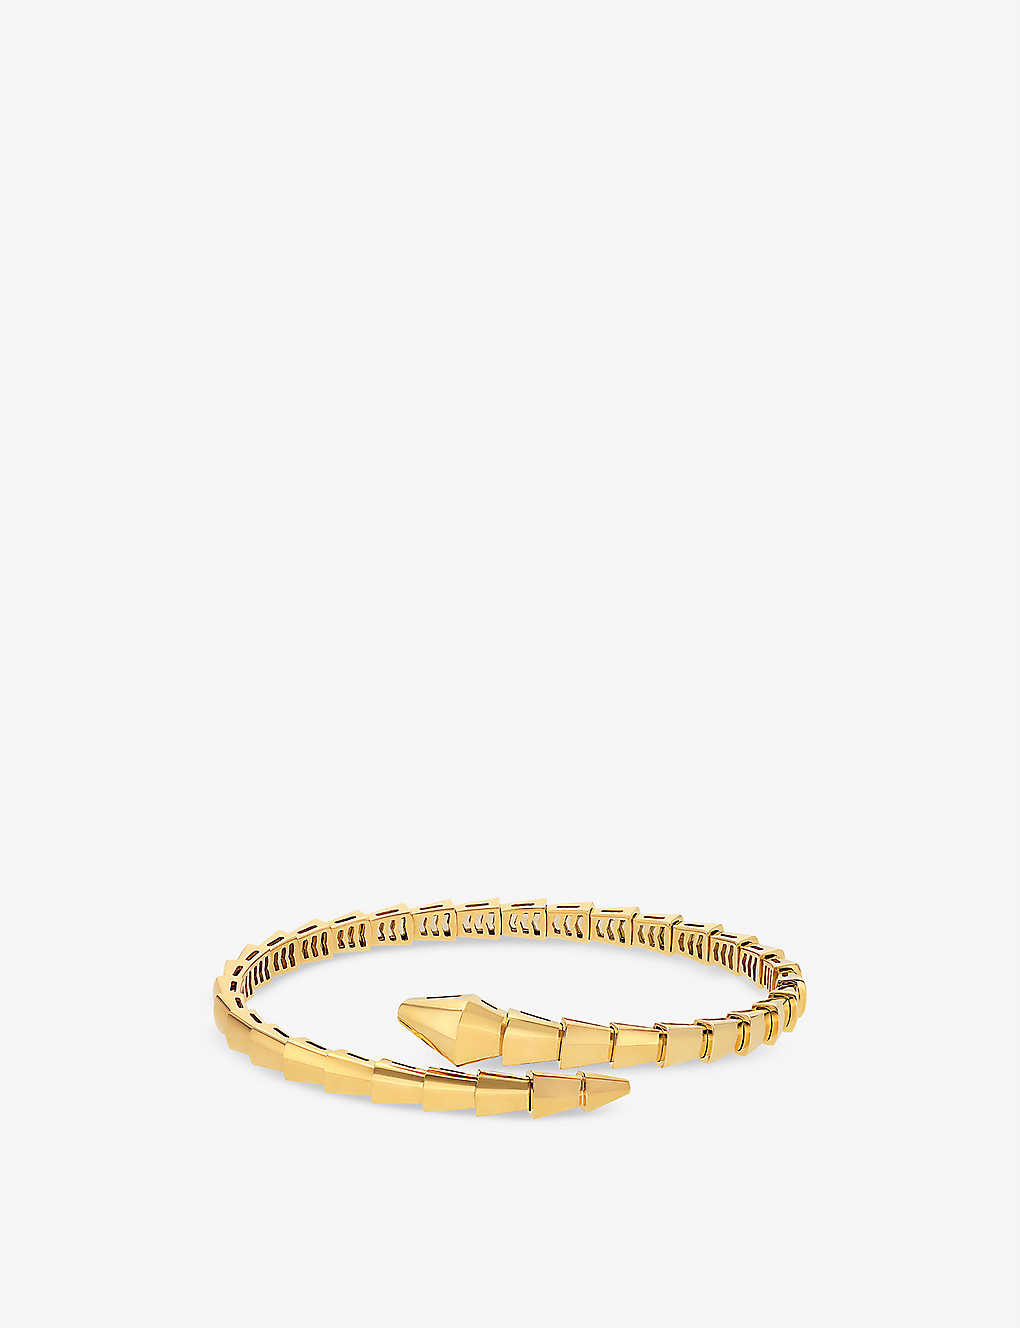 Bvlgari Serpenti Viper 18k Yellow Gold Wrap Bracelet